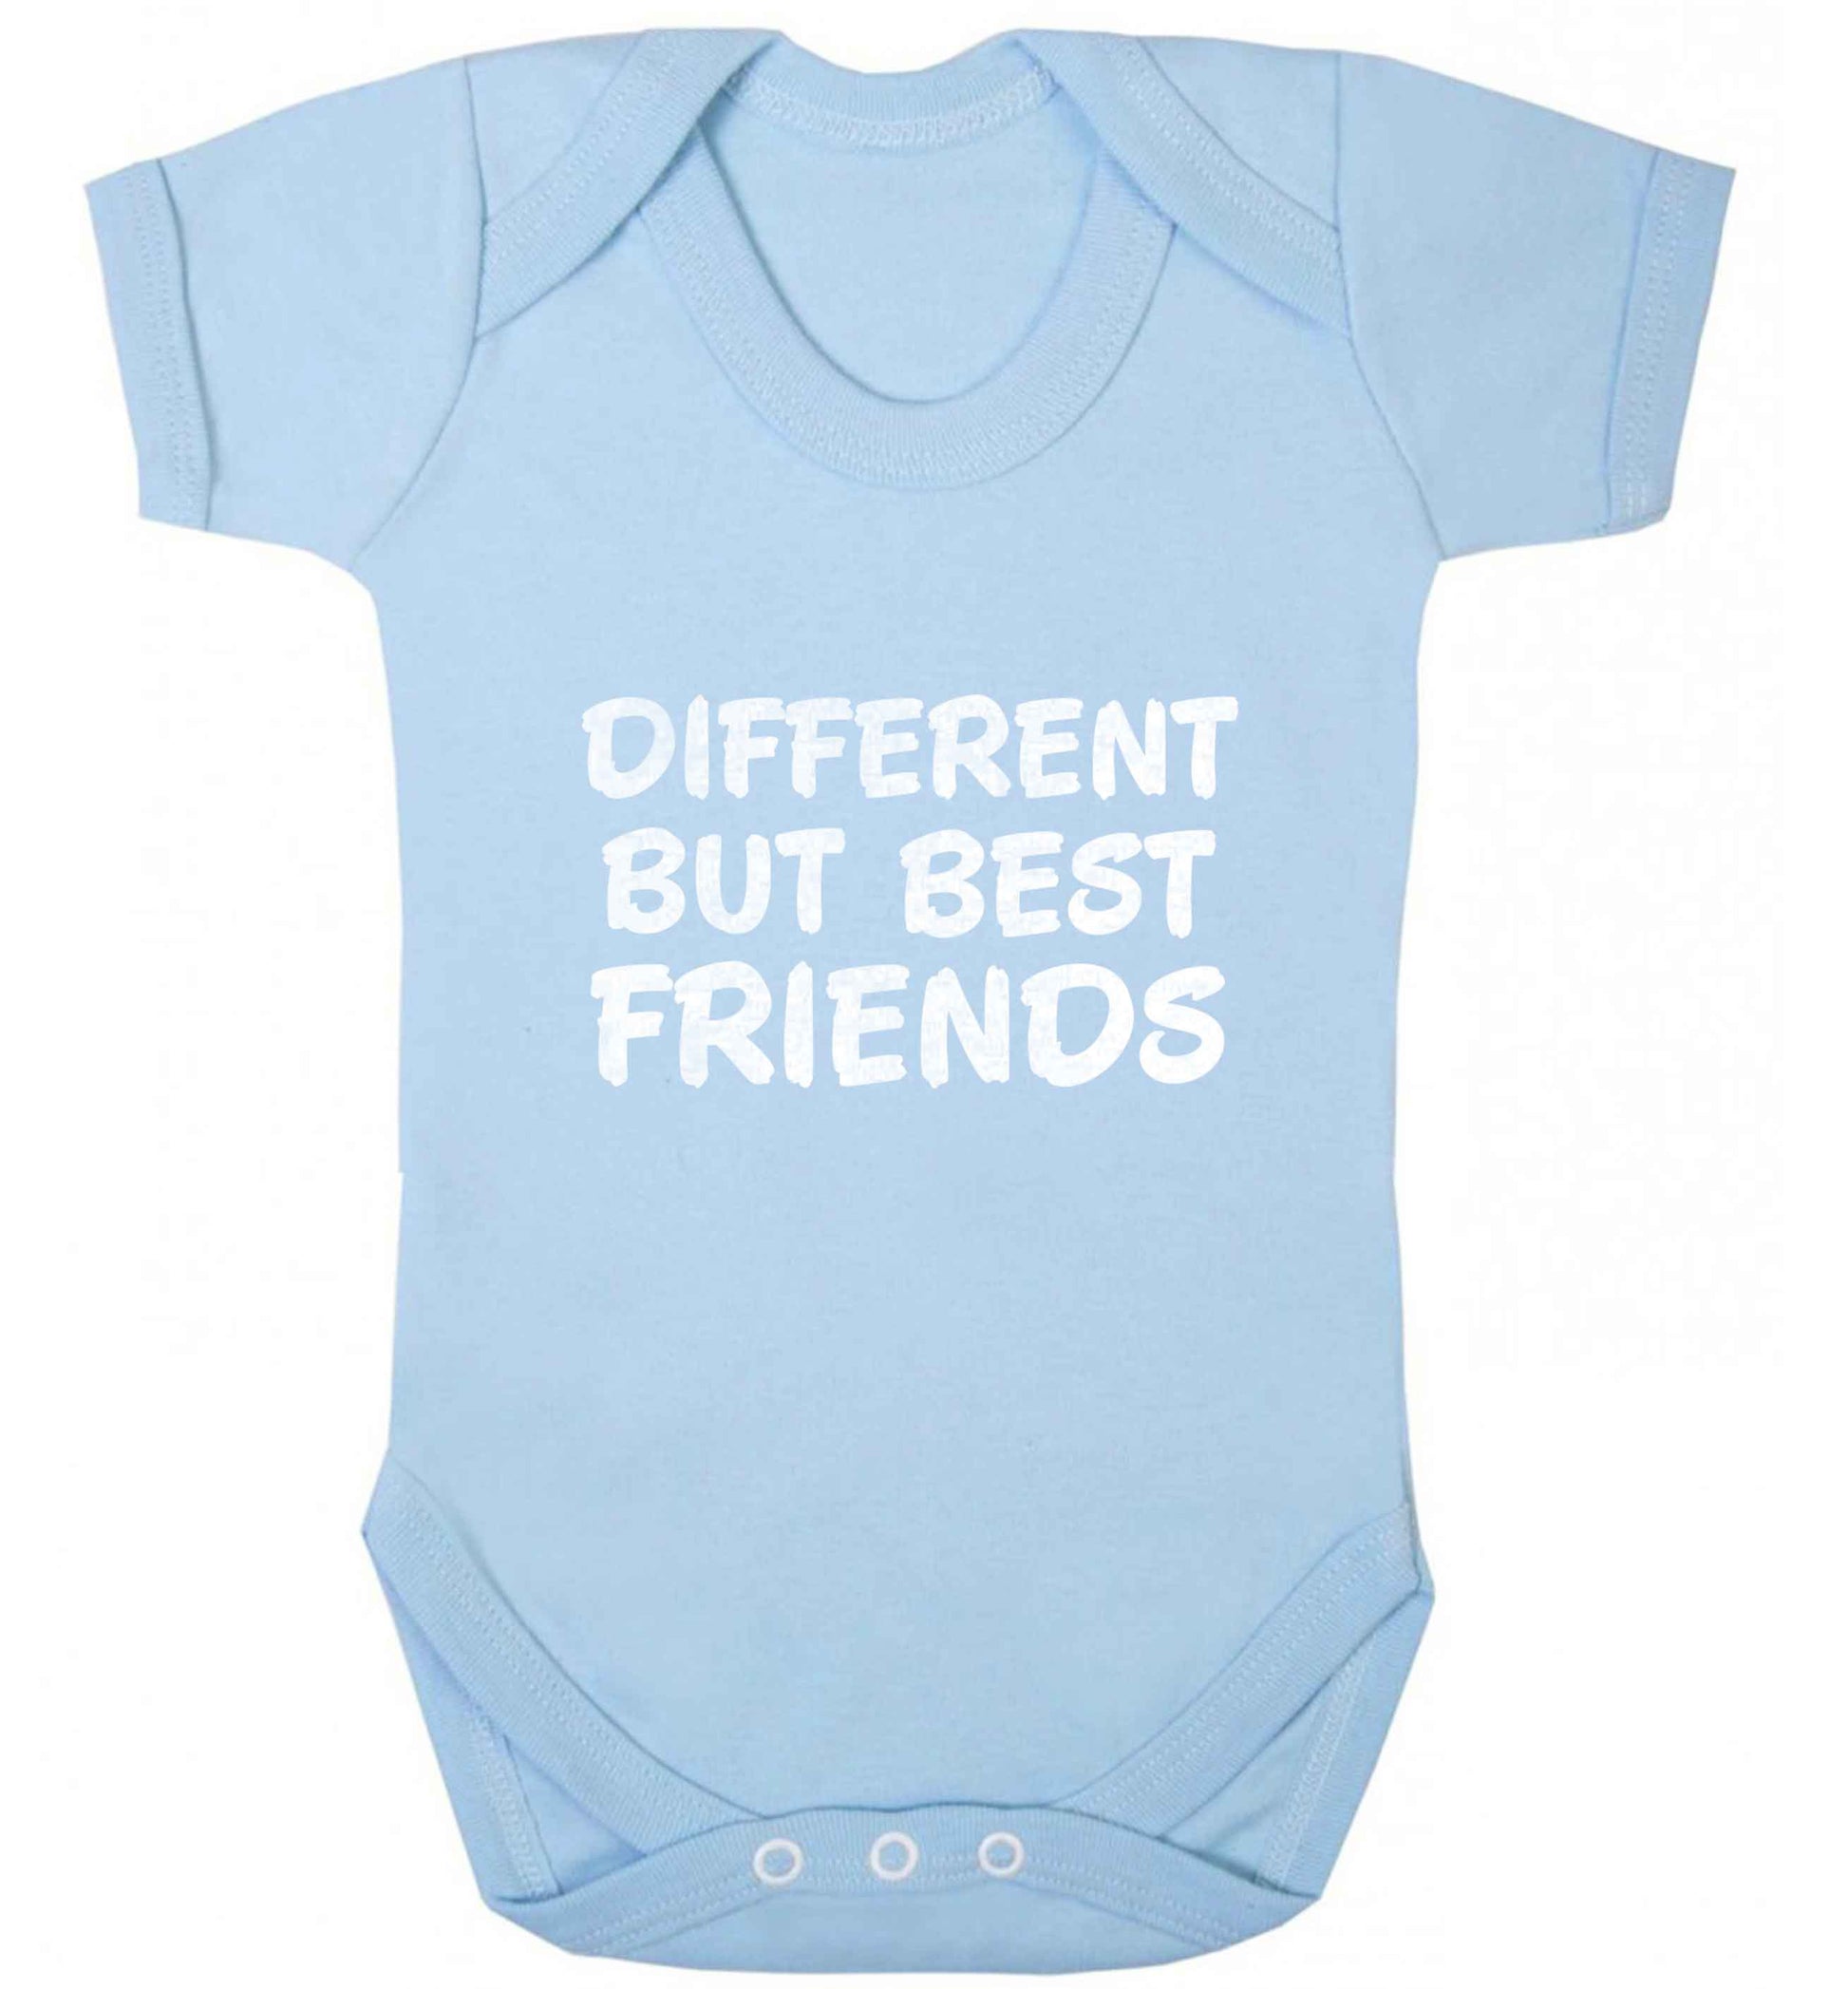 Different but best friends baby vest pale blue 18-24 months